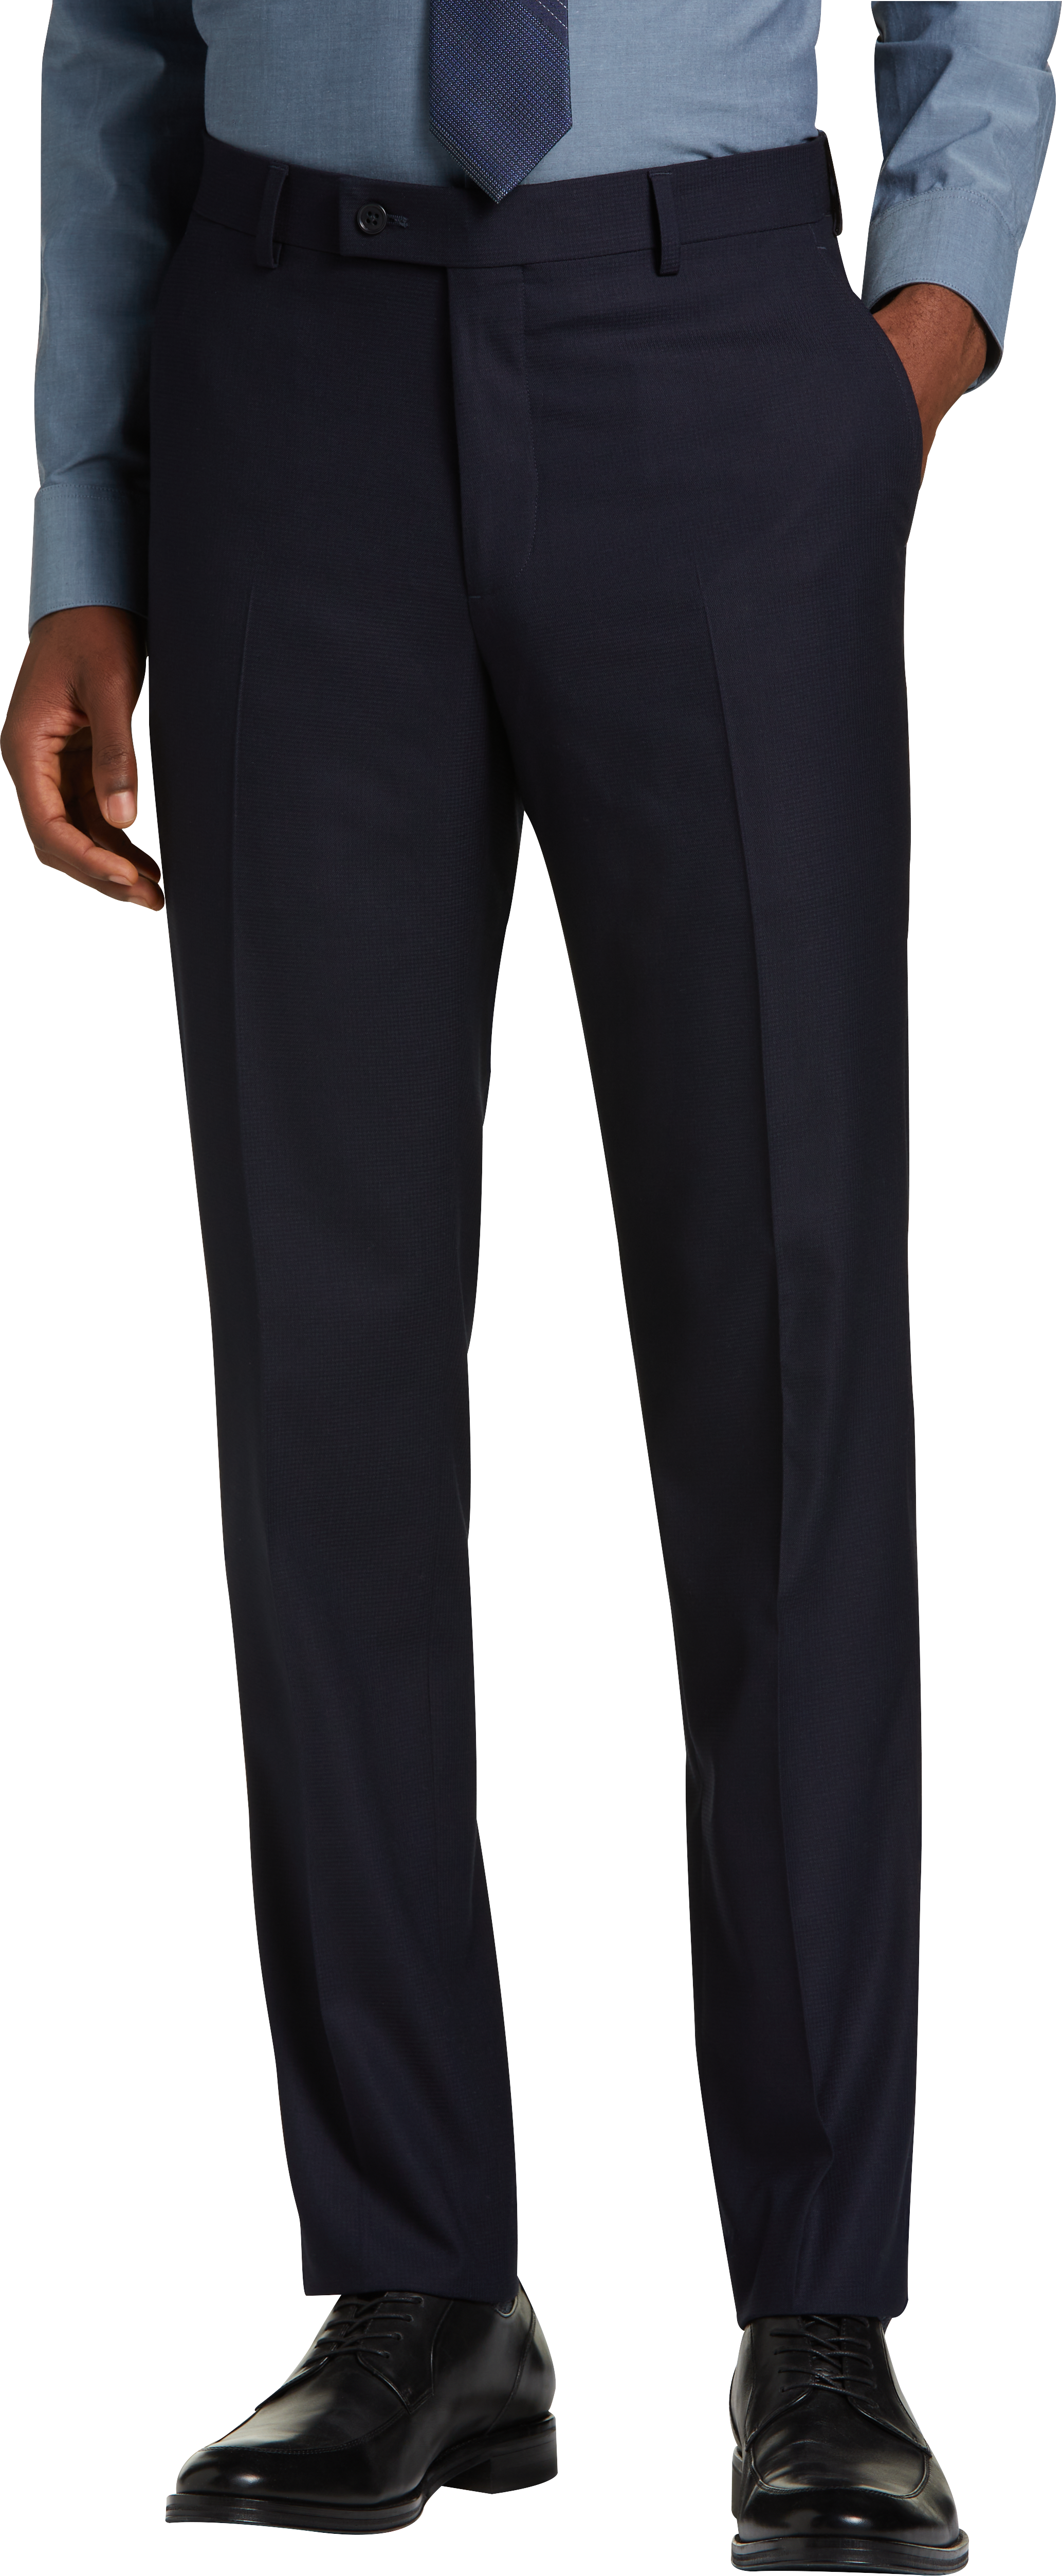 Wilke-Rodriguez Slim Fit Suit Separates Pant, Navy Tic - Men's Suits ...